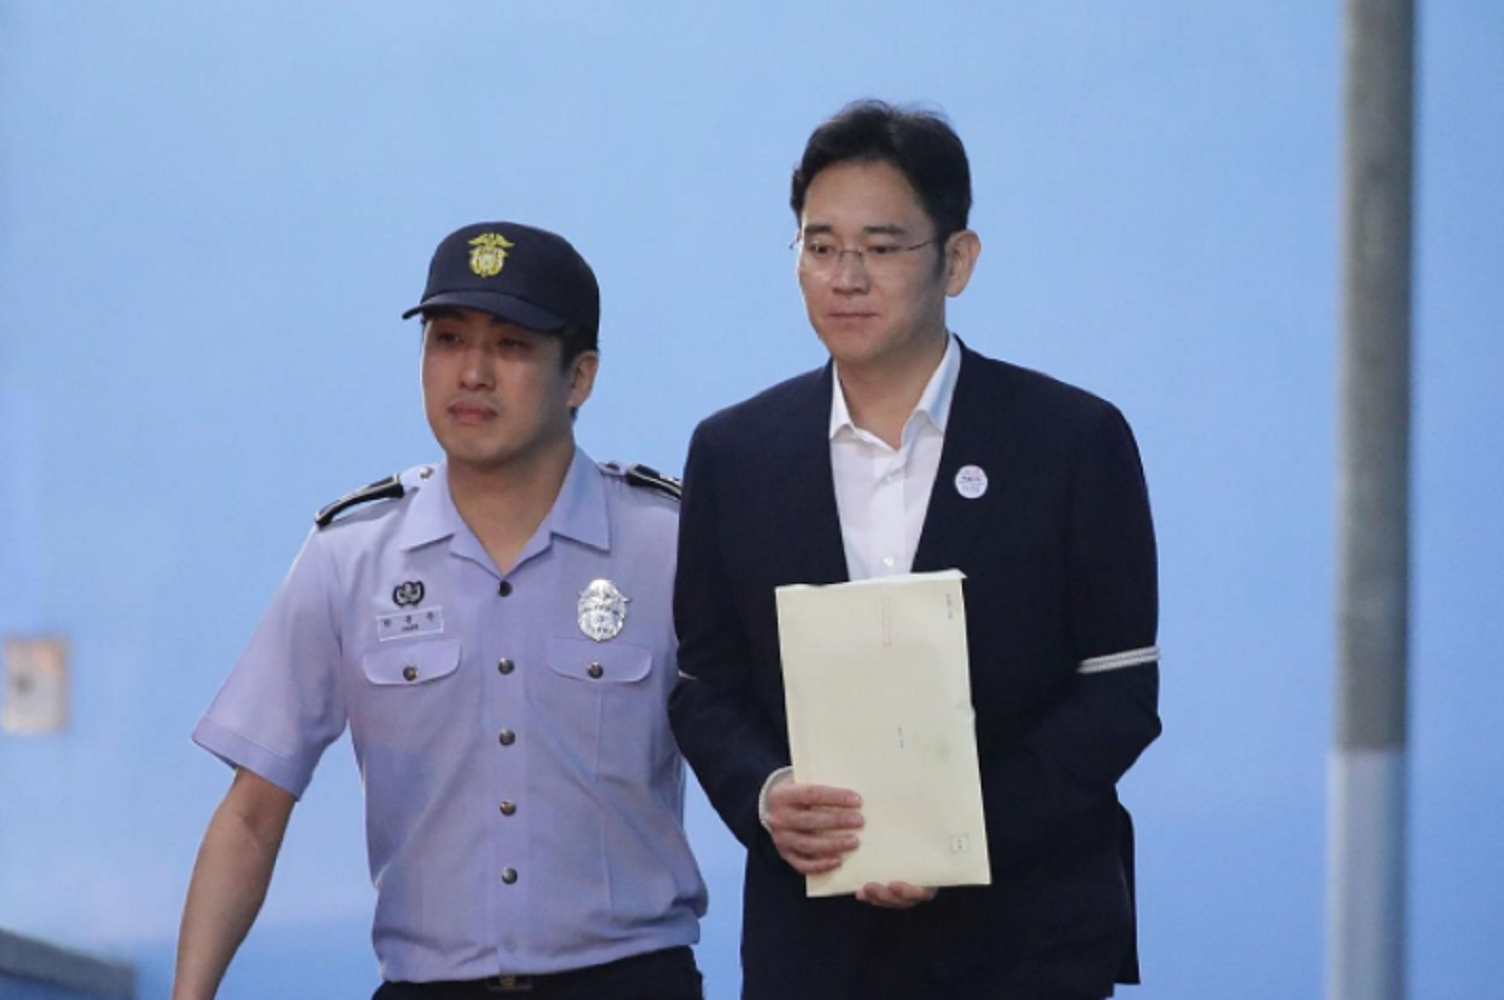 Cinco años de cárcel al vicepresidente de Samsung por soborno